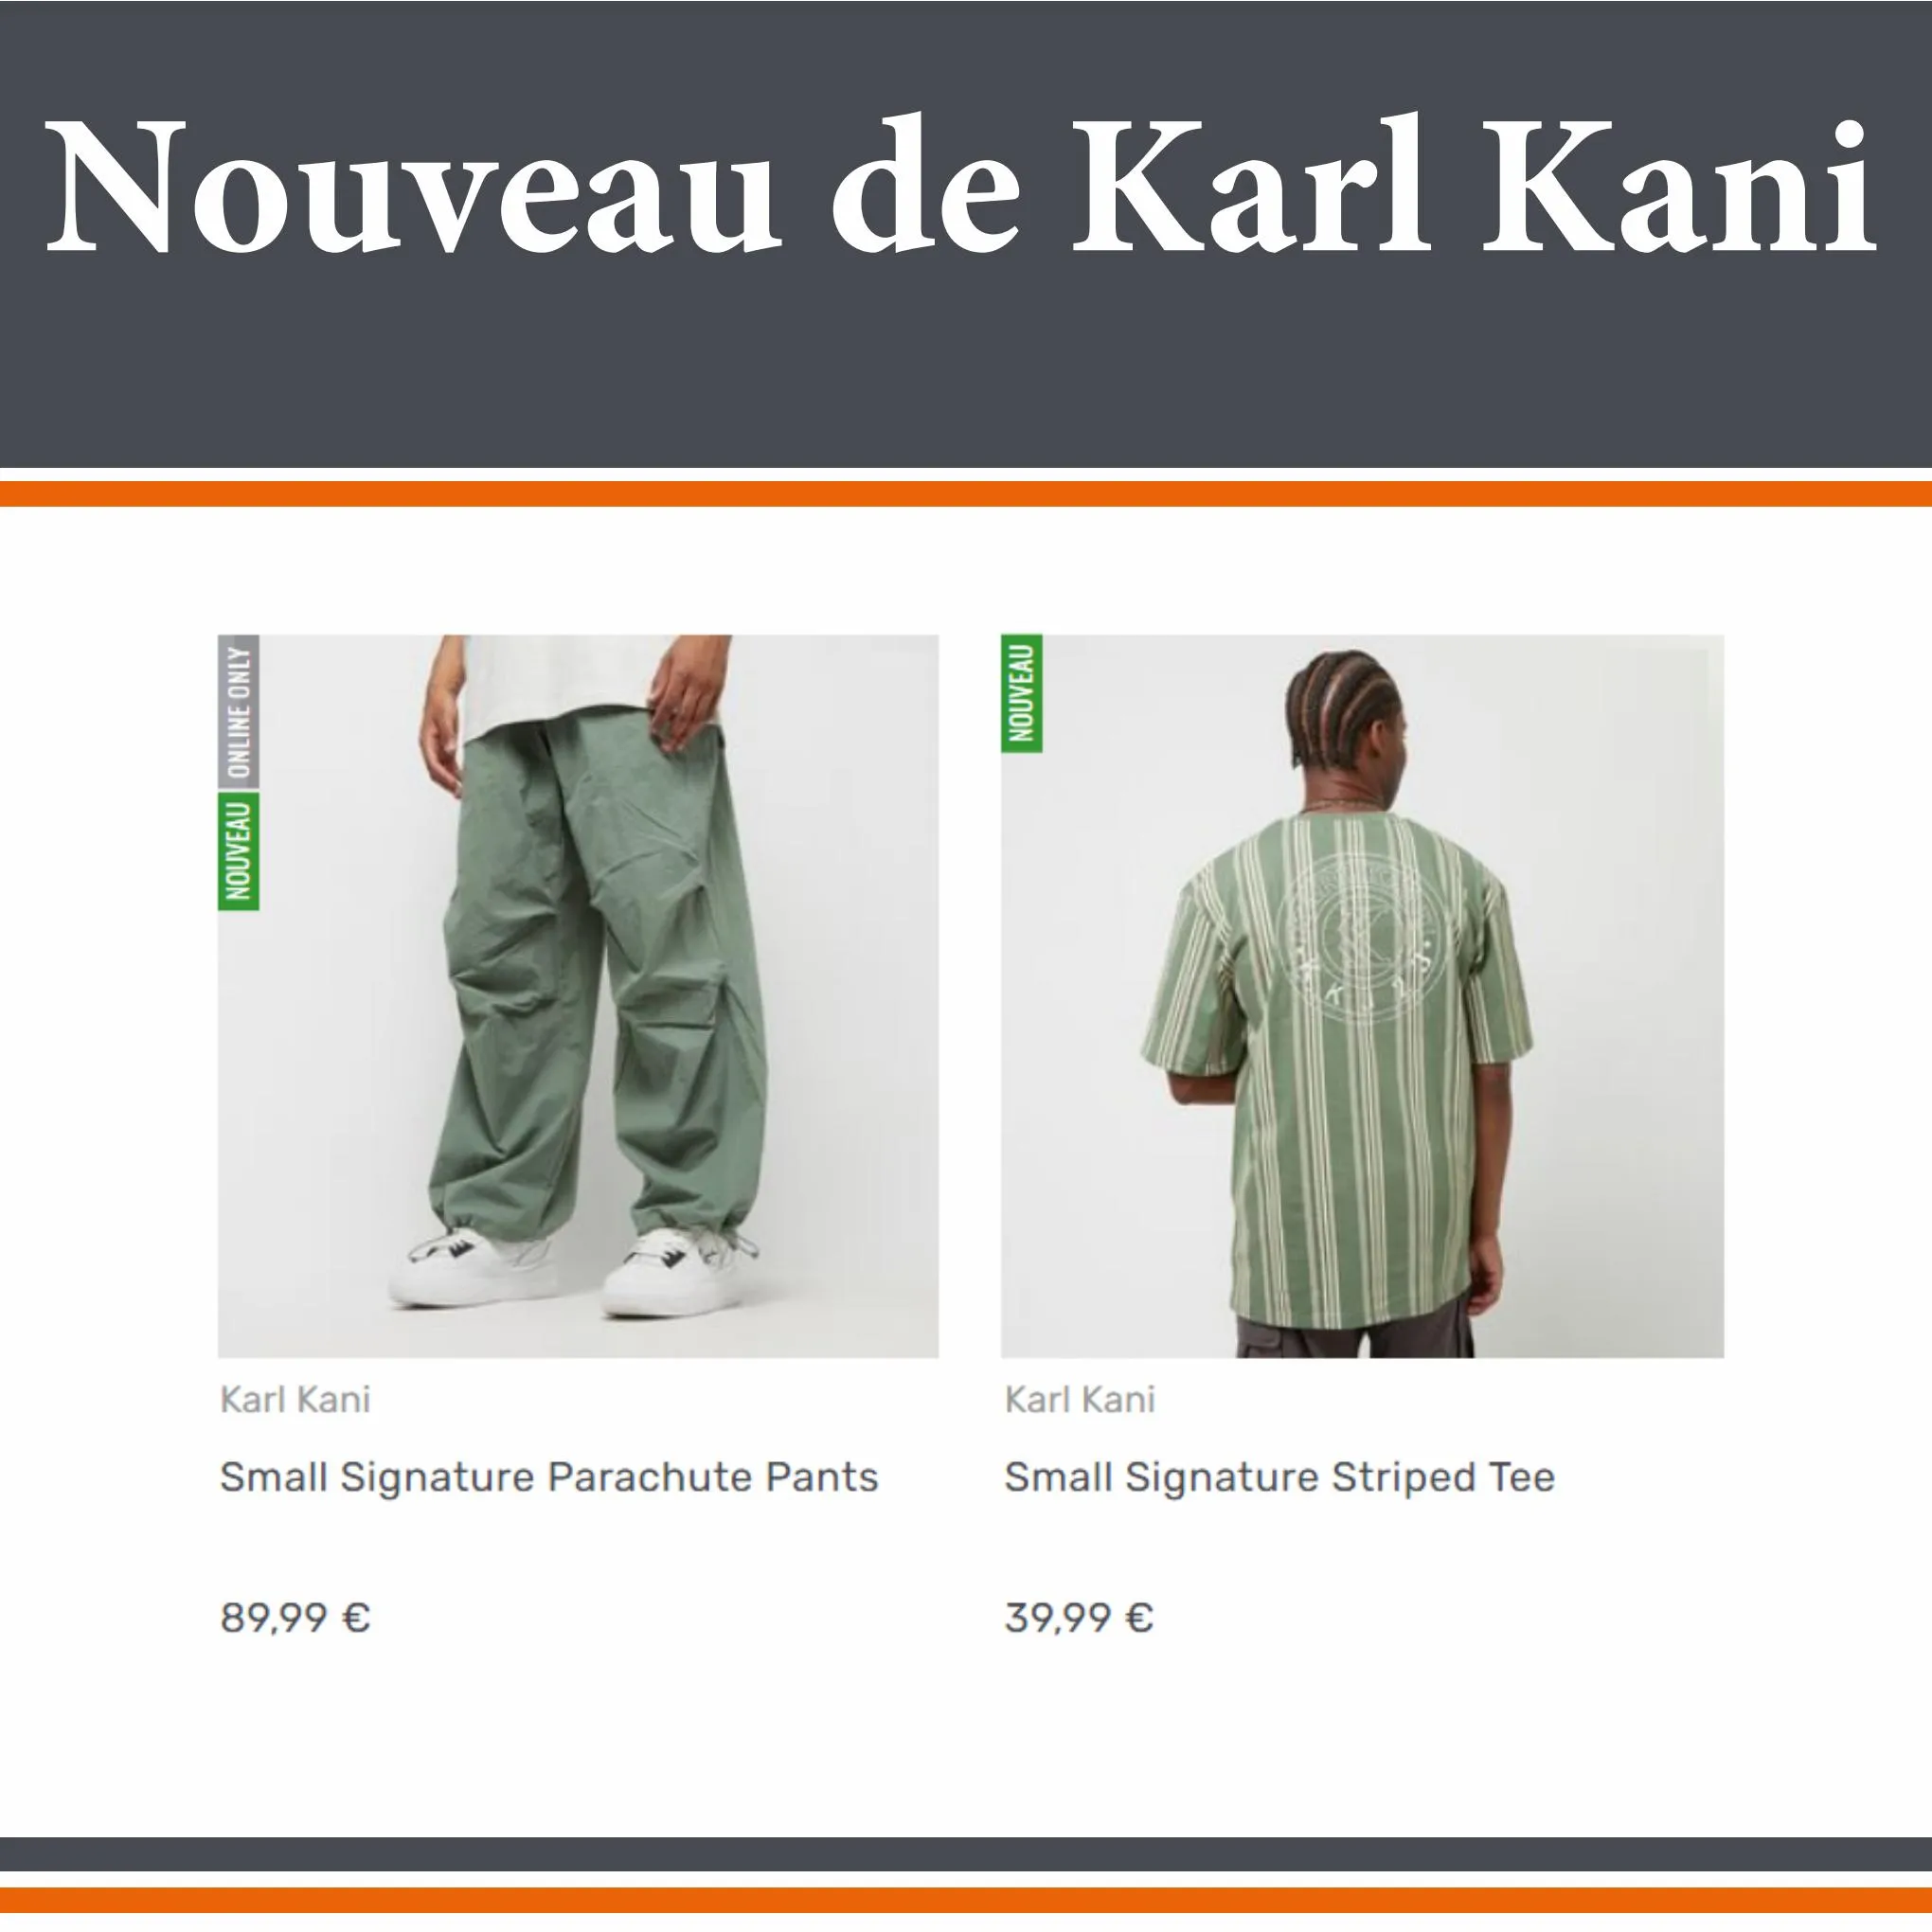 Catalogue Snipes Nouveau de Karl Kani, page 00002